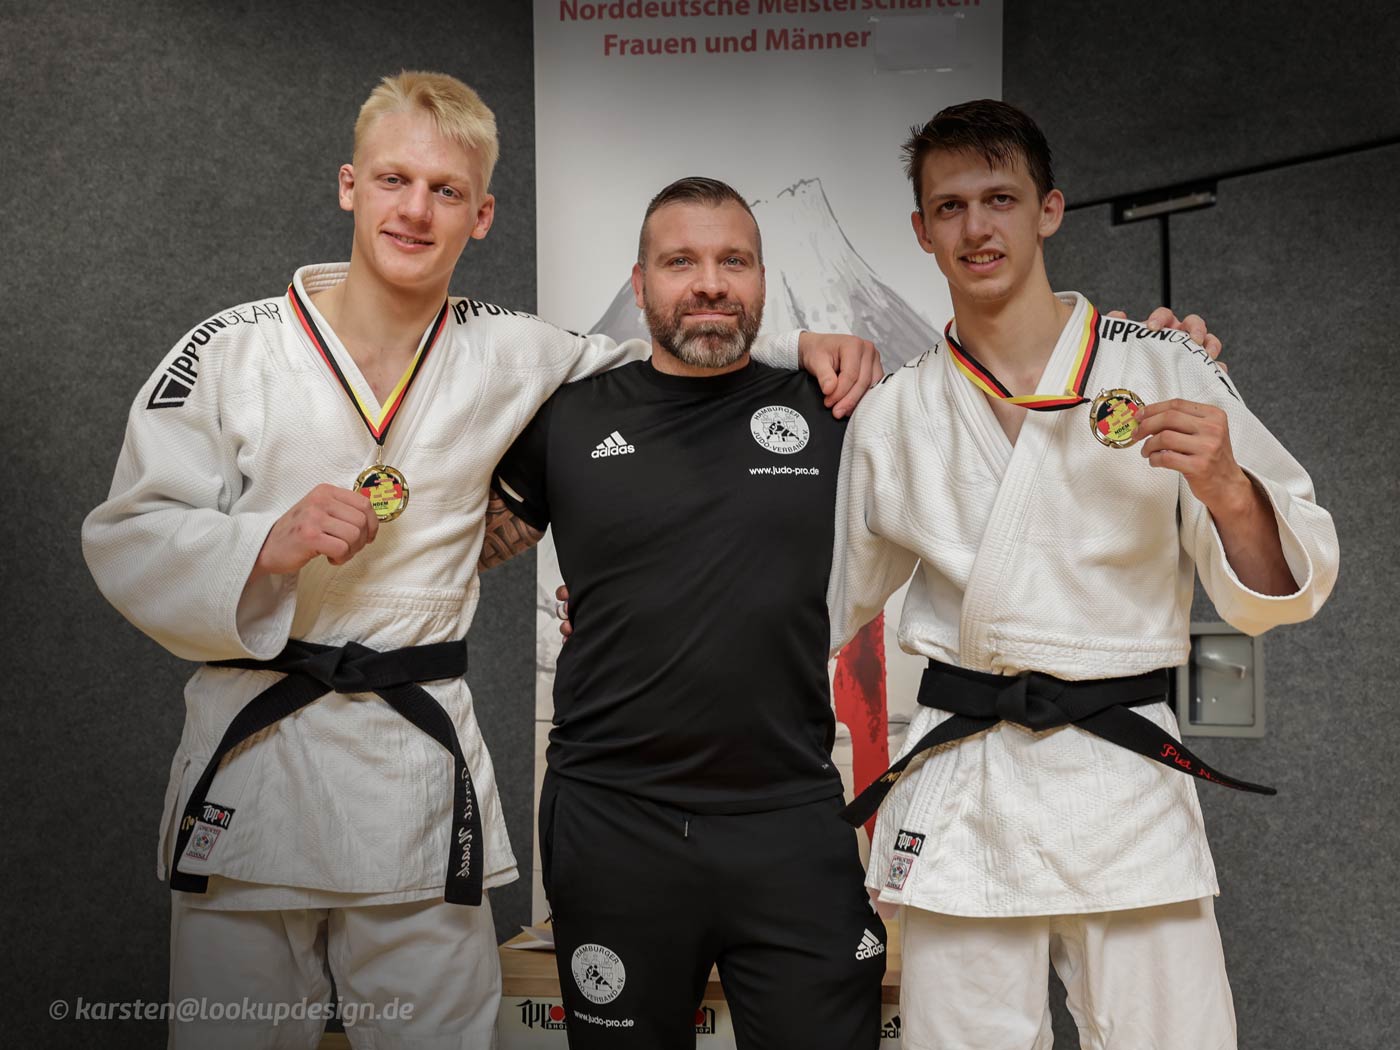 Gerrit (81 kg) und Piet Noack (73 kg) von der JGS werden Norddeutsche Meister der U21